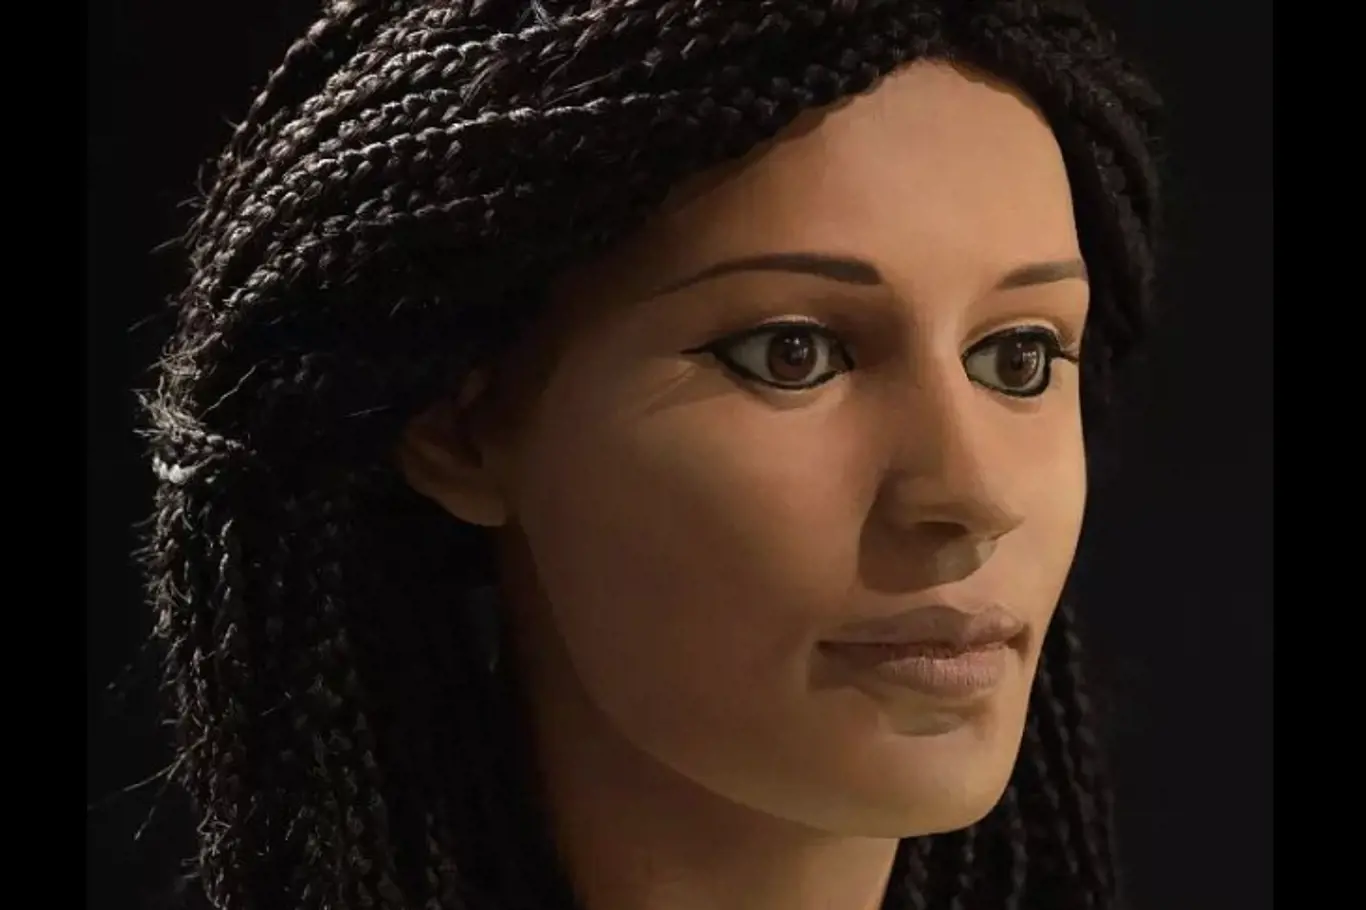 Mumifikovaná egyptská hlava, uchovávaná ve sklepě lékařské budovy, byla téměř 100 let neznámá, ale nyní se vědcům podařilo obnovit totožnost mladé ženy, která žila před 2000 lety.